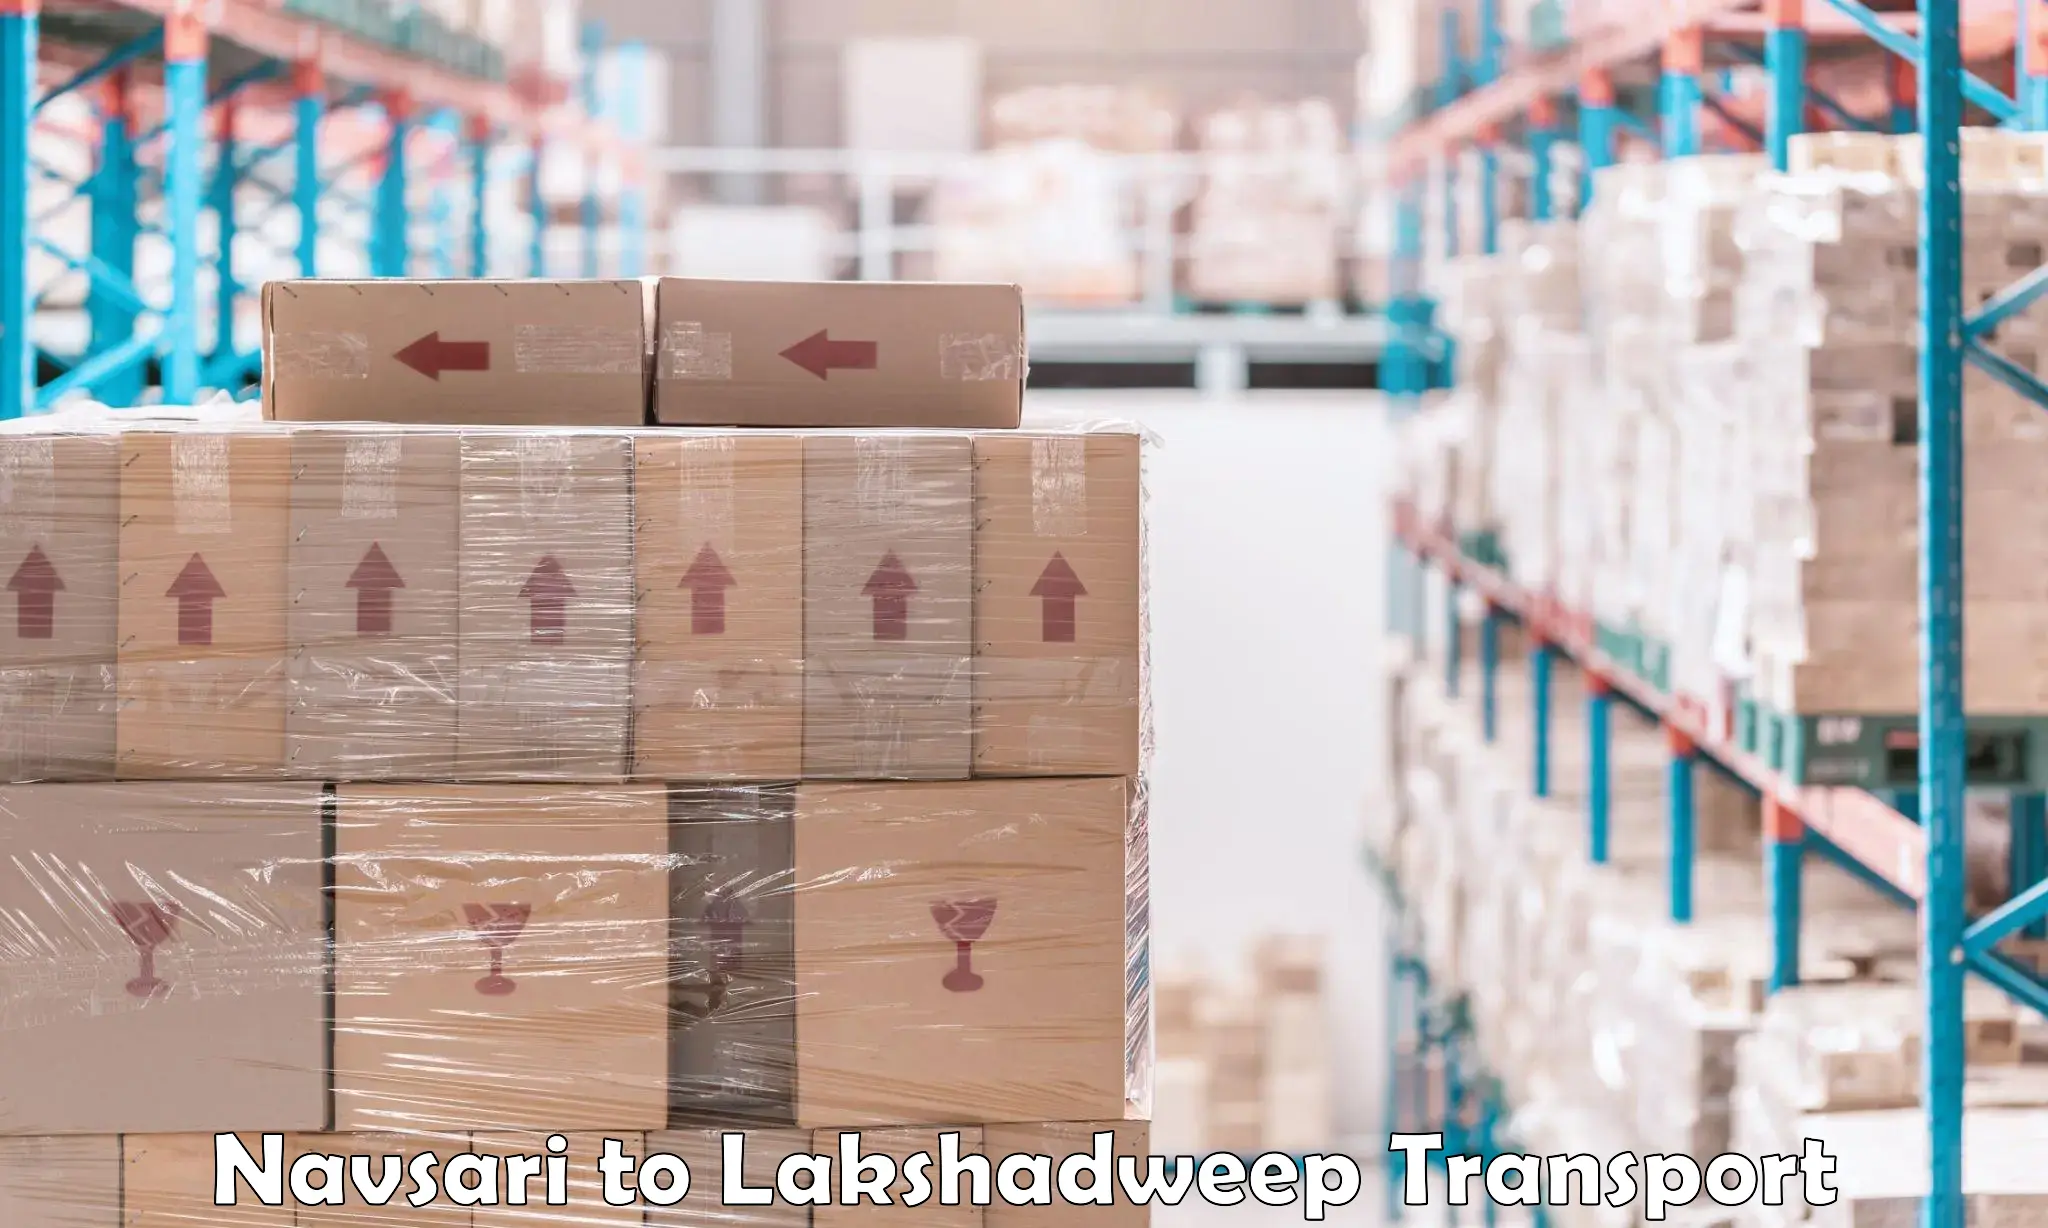 Luggage transport services Navsari to Lakshadweep